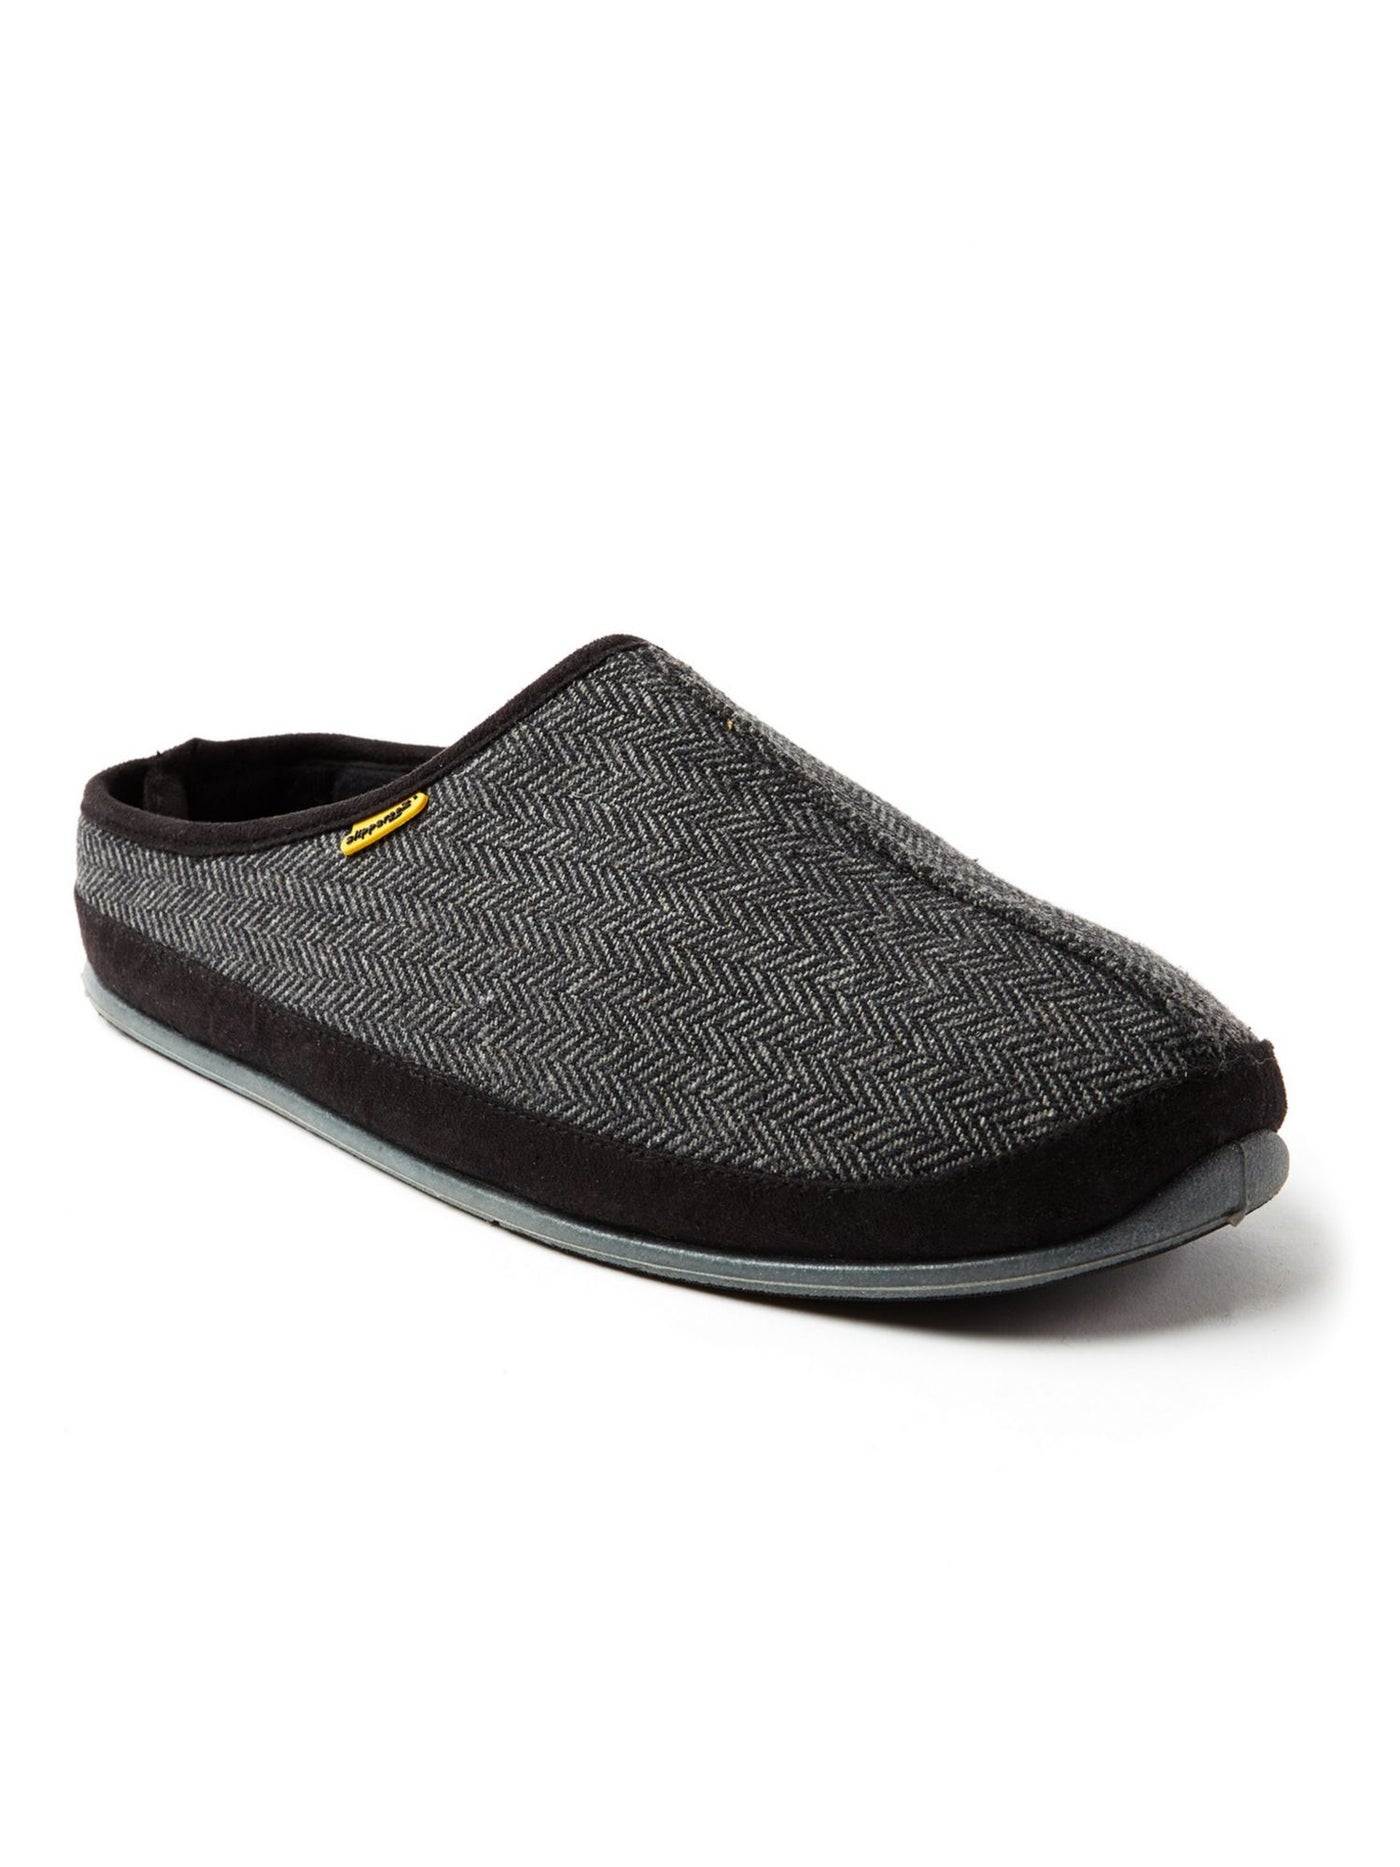 DEER STAGS SLIPPEROOZ Mens Black Herringbone Padded Comfort Wherever Round Toe Platform Slip On Slippers Shoes 11 M